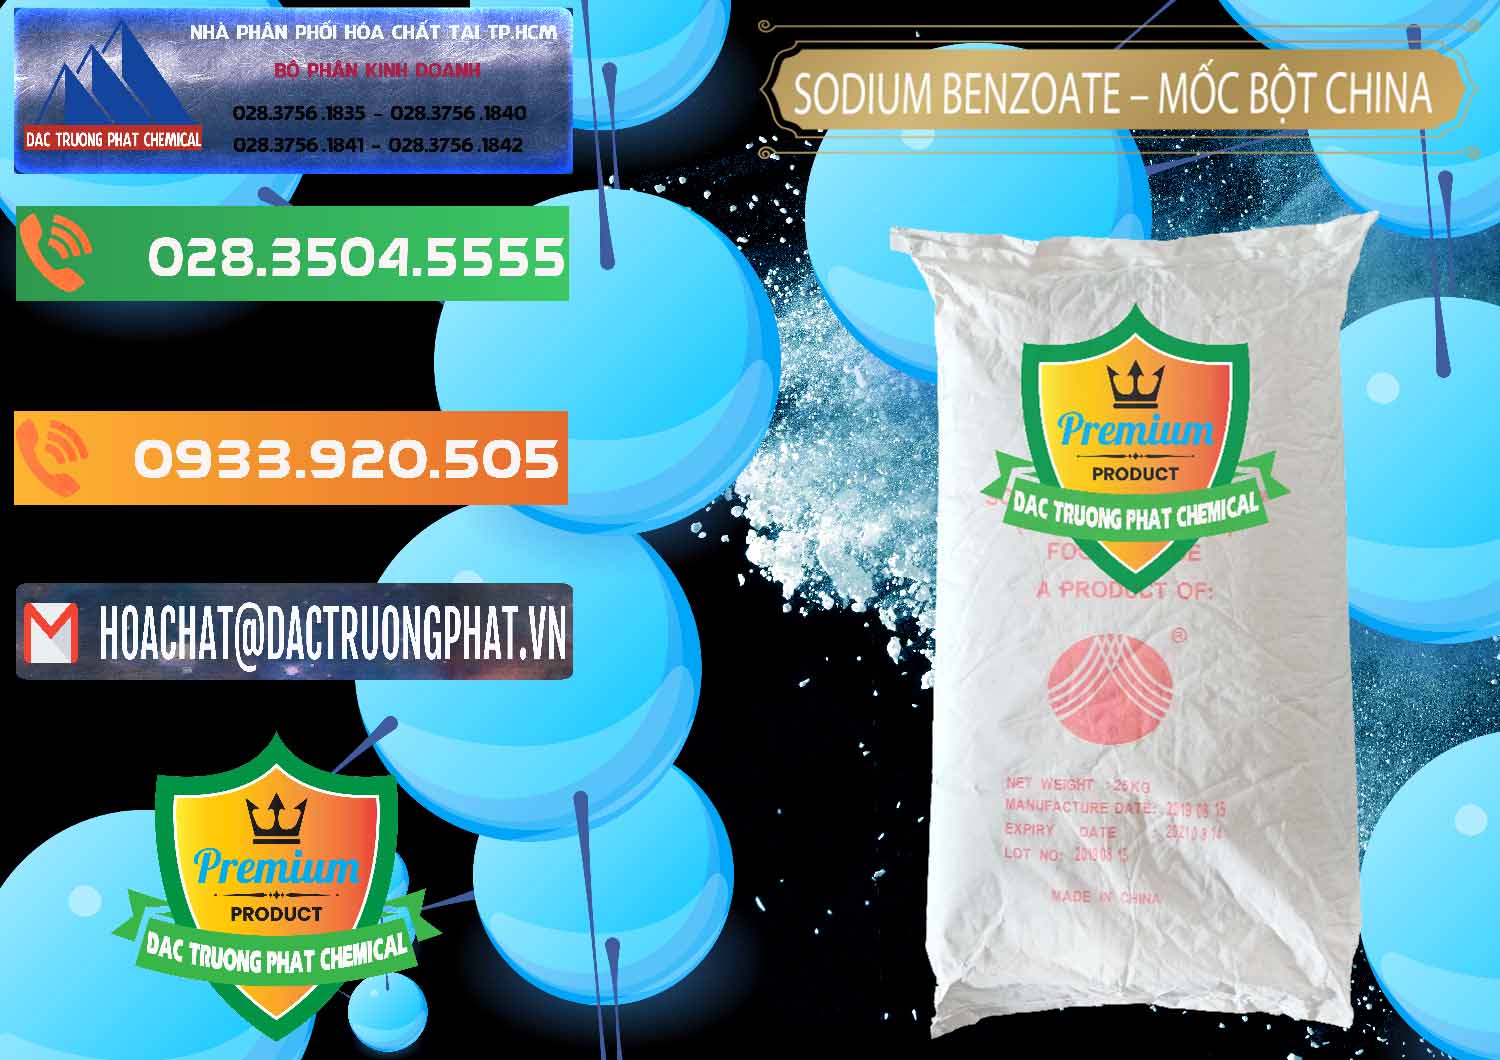 Cty chuyên kinh doanh ( bán ) Sodium Benzoate - Mốc Bột Chữ Cam Food Grade Trung Quốc China - 0135 - Phân phối và cung ứng hóa chất tại TP.HCM - hoachatxulynuoc.com.vn